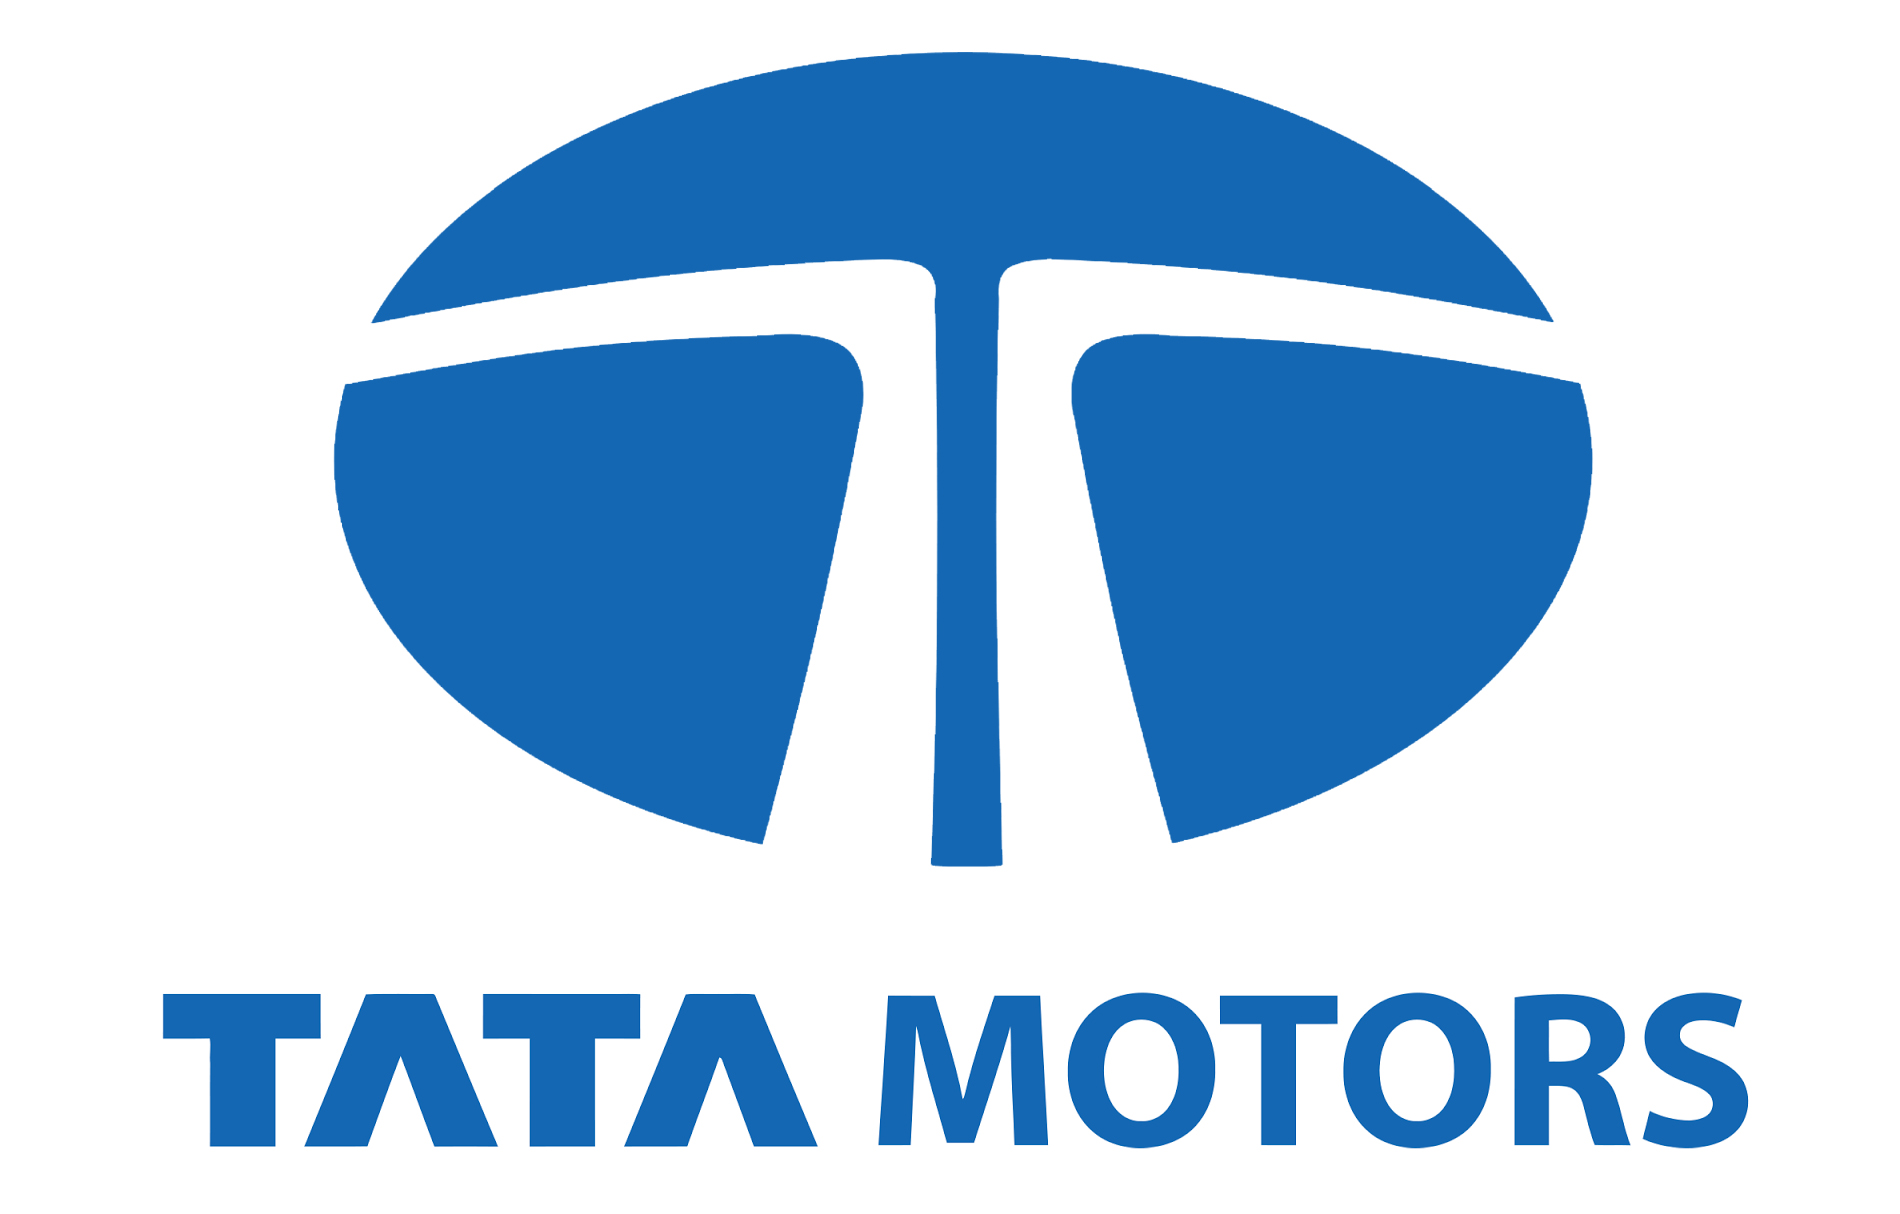 Tata Motors Cars Showroom - MK Motors|Show Room|Automotive